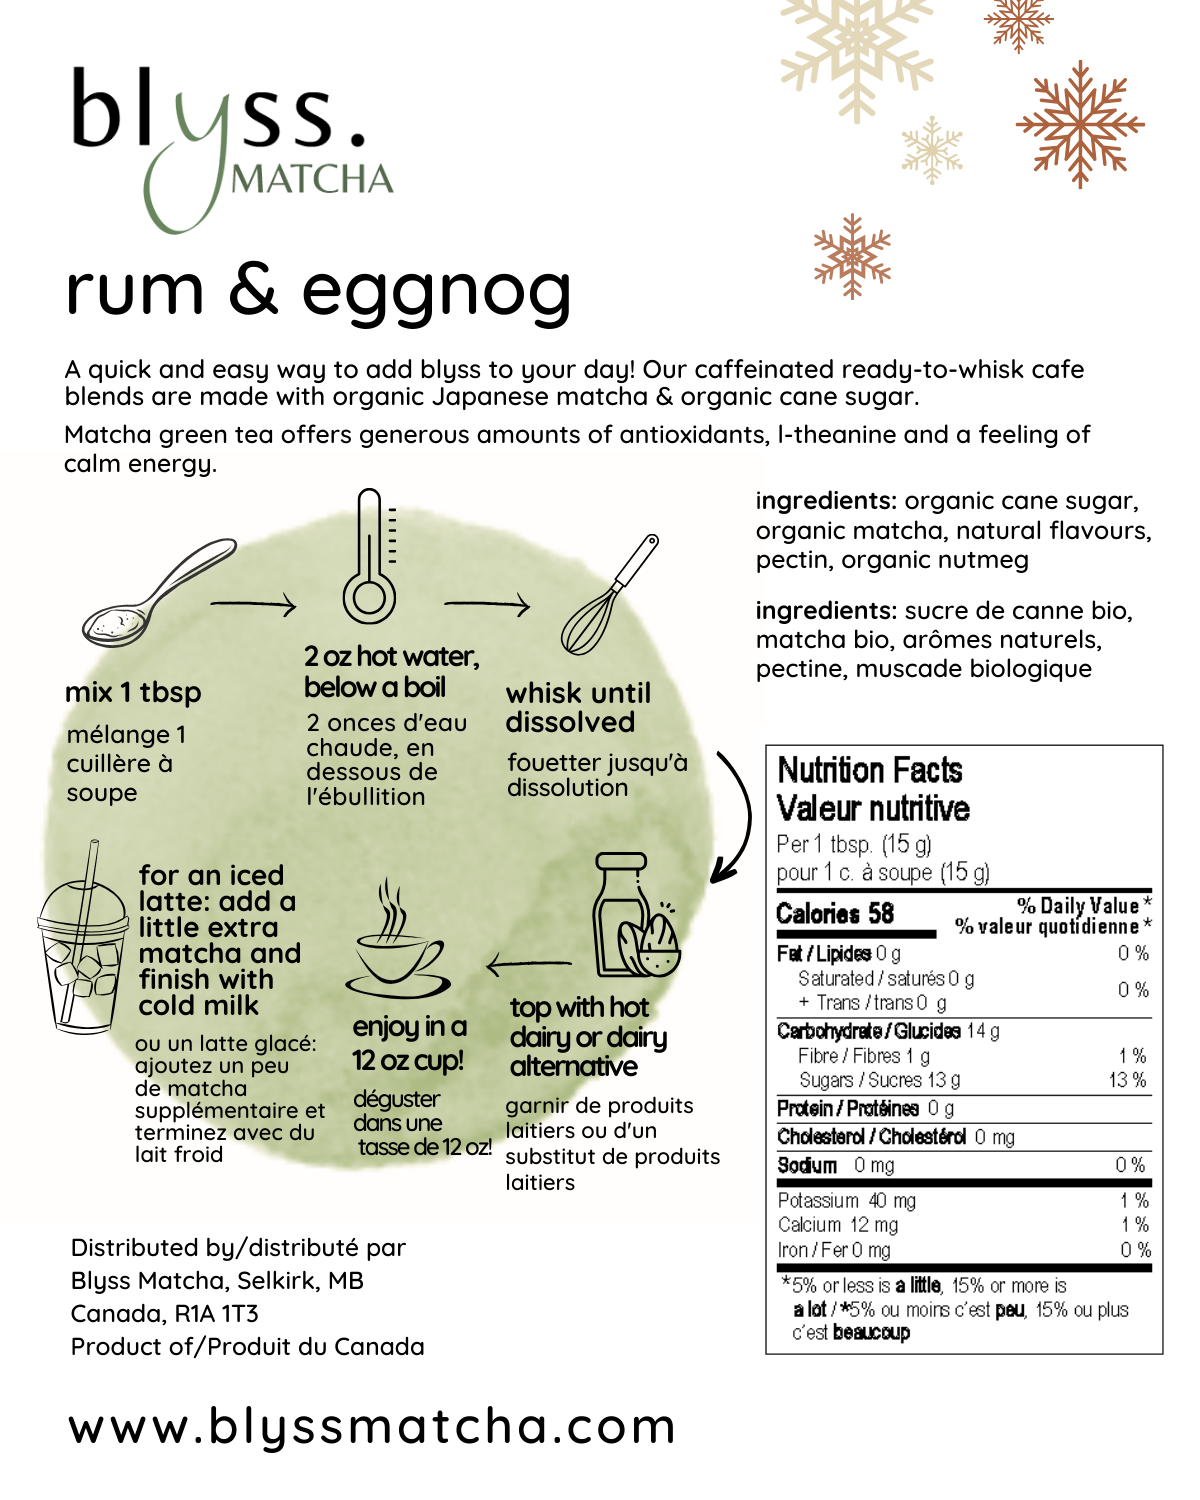 Rum & Eggnog